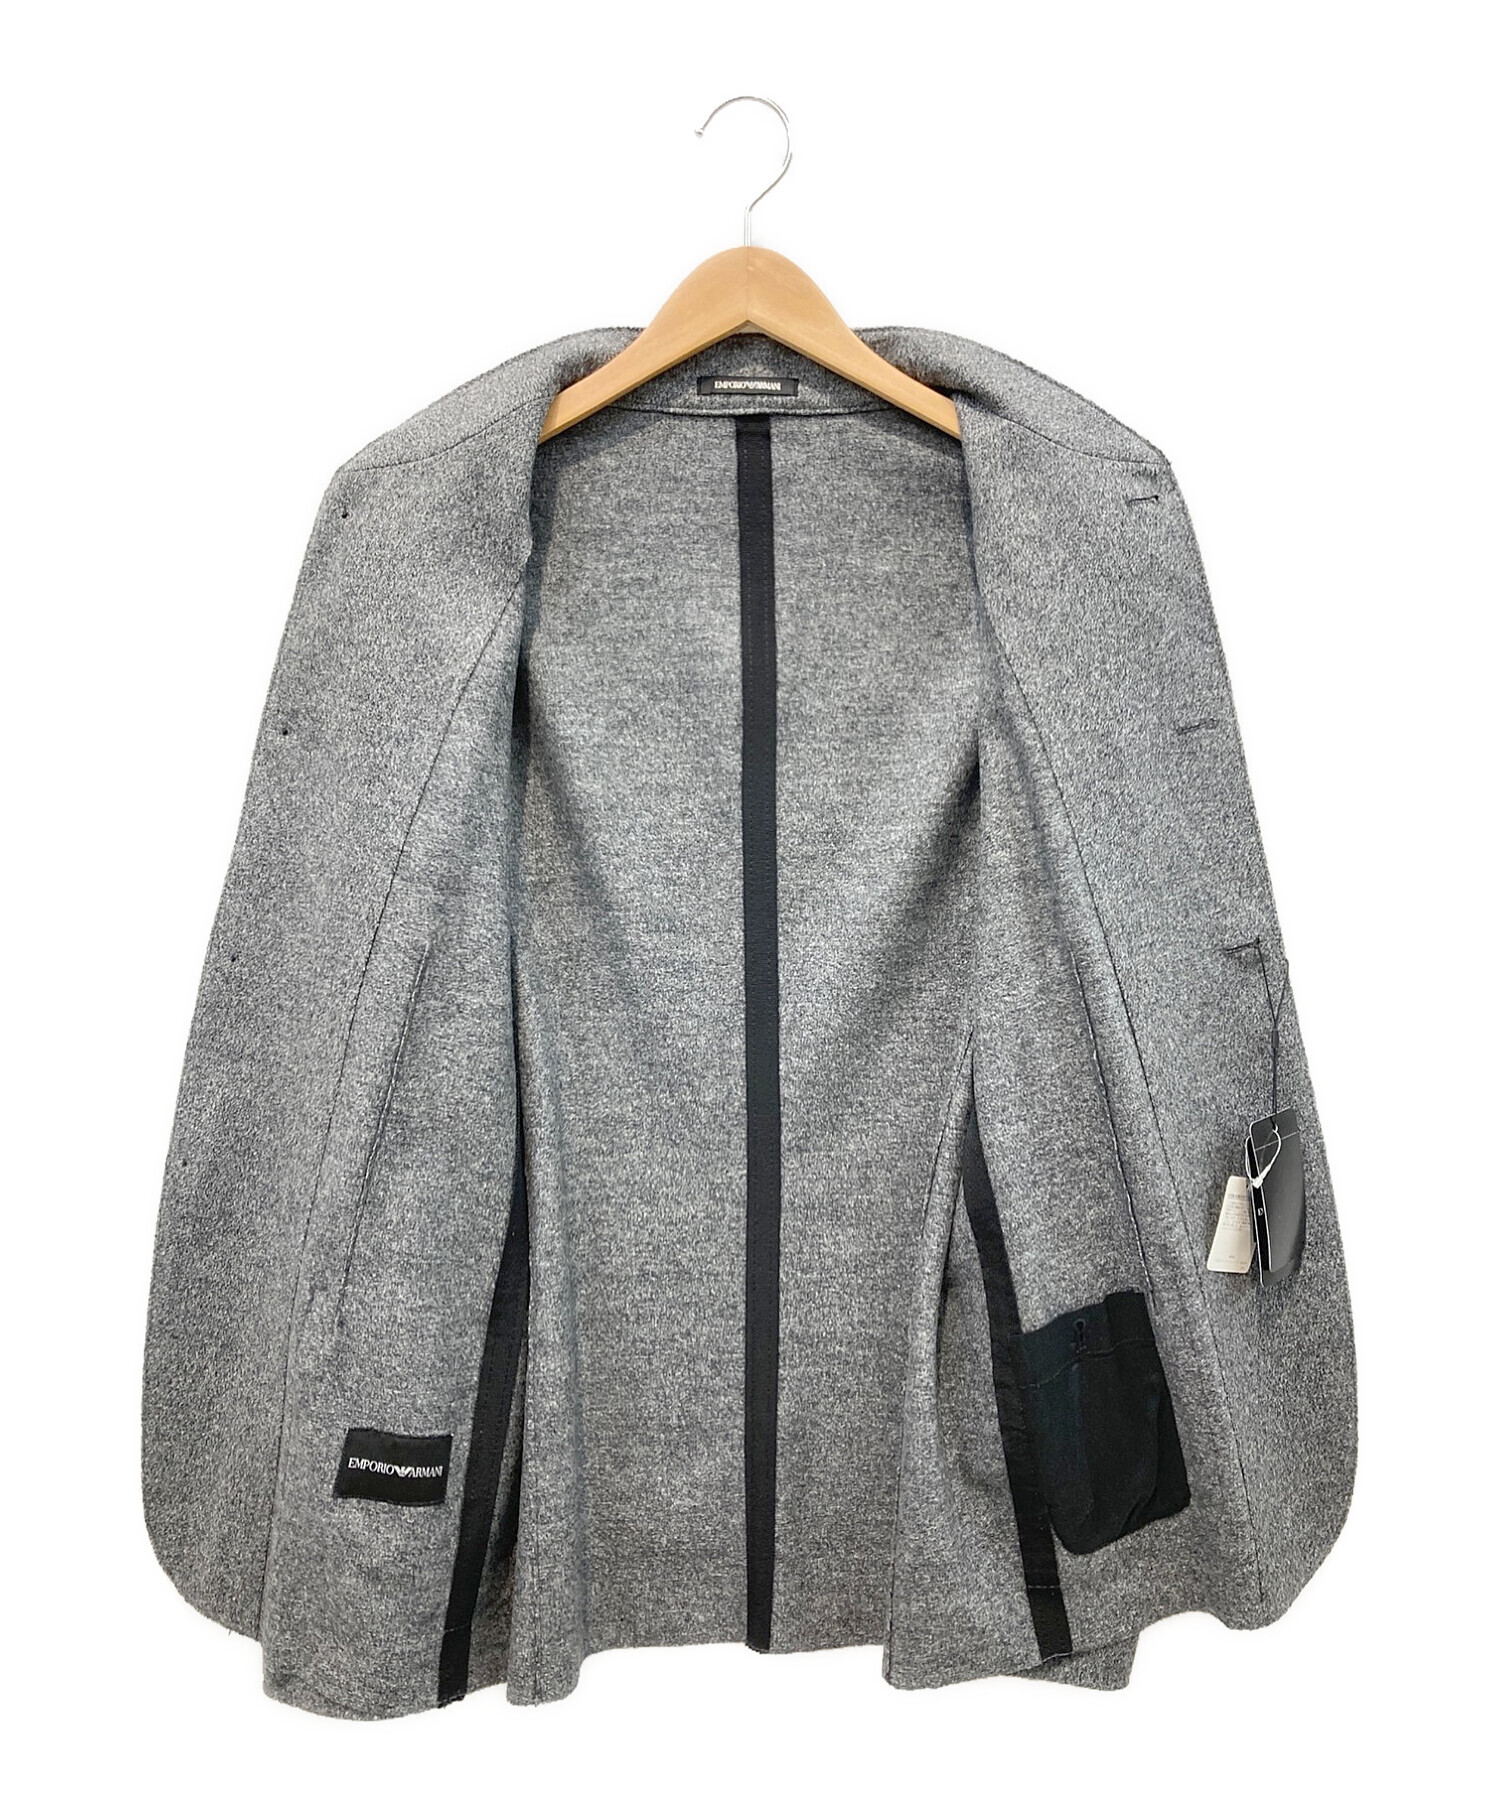 EMPORIO ARMANI (エンポリオアルマーニ) ウールジャケット グレー サイズ:50 未使用品